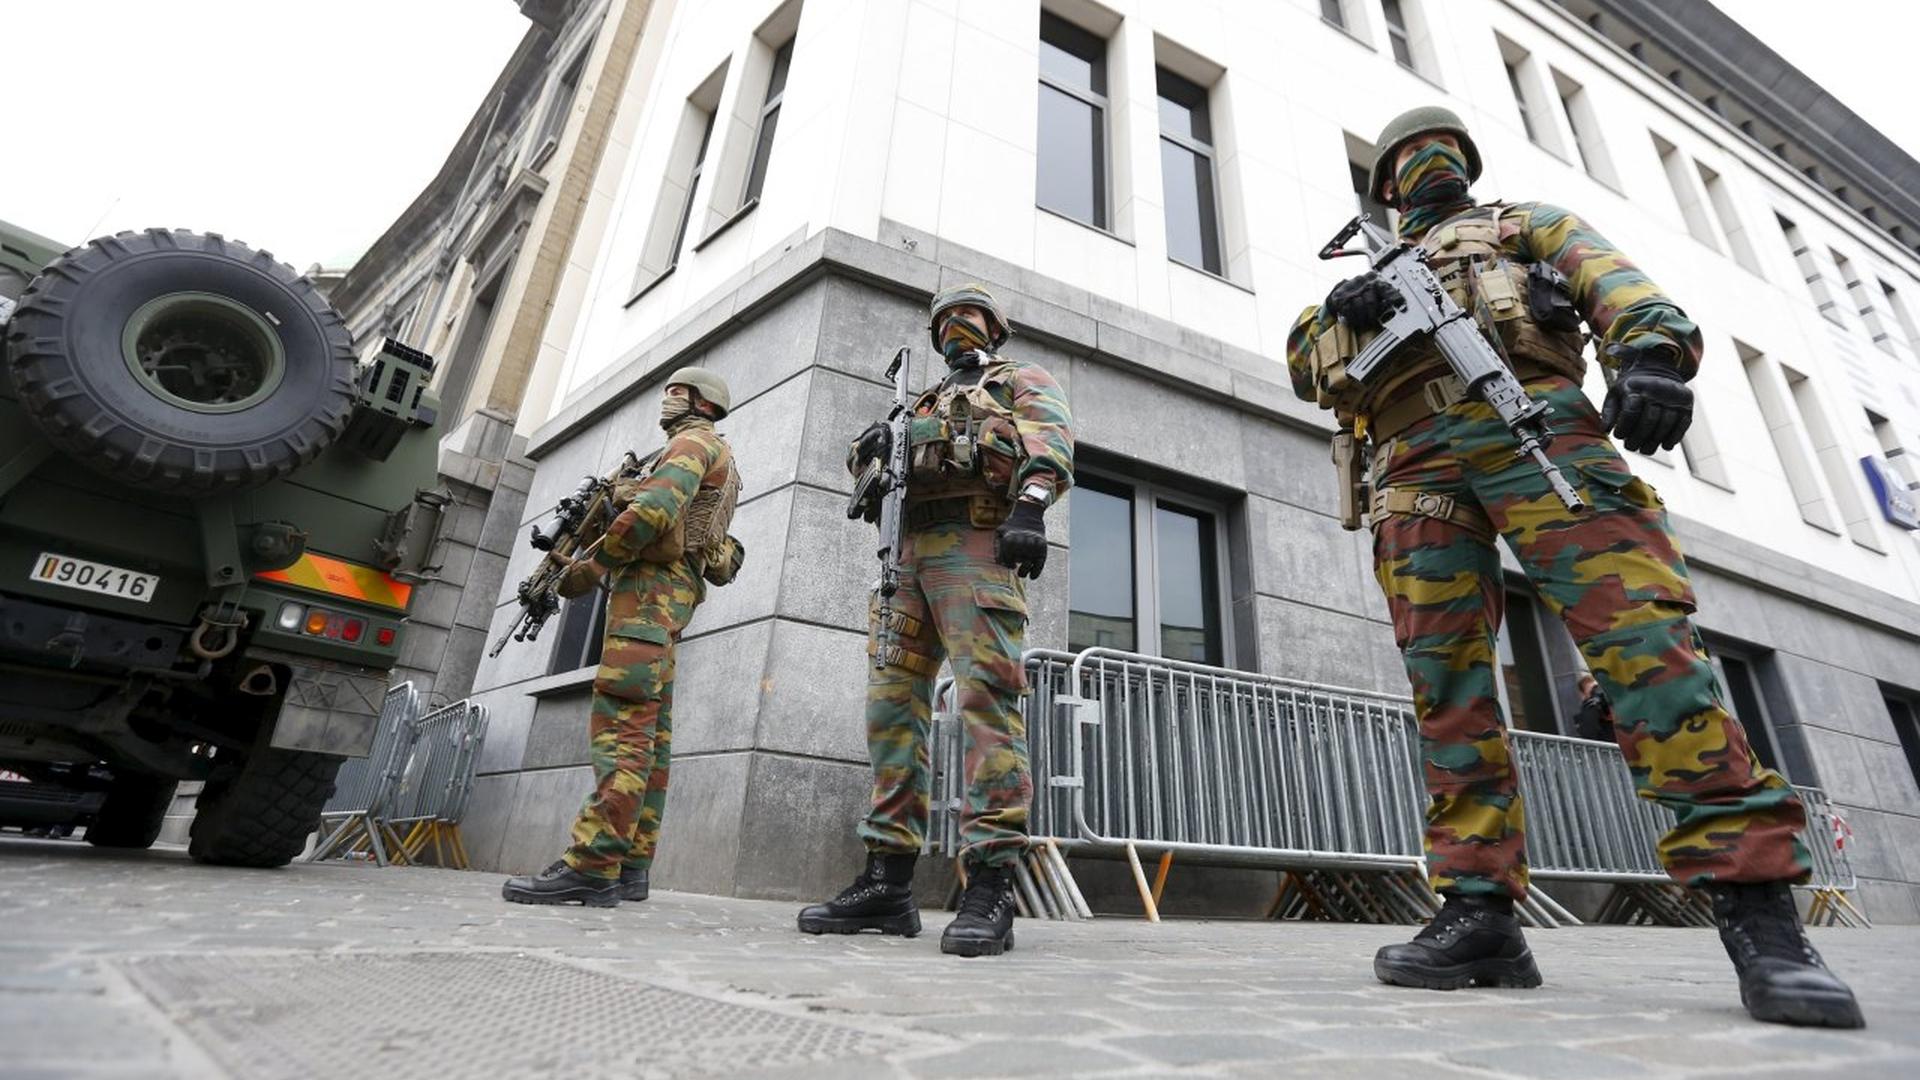 Des soldats gardent le bâtiment de l'hôtel de ville à l'heure de fortes tensions entre la police et les résidents à Molenbeek.